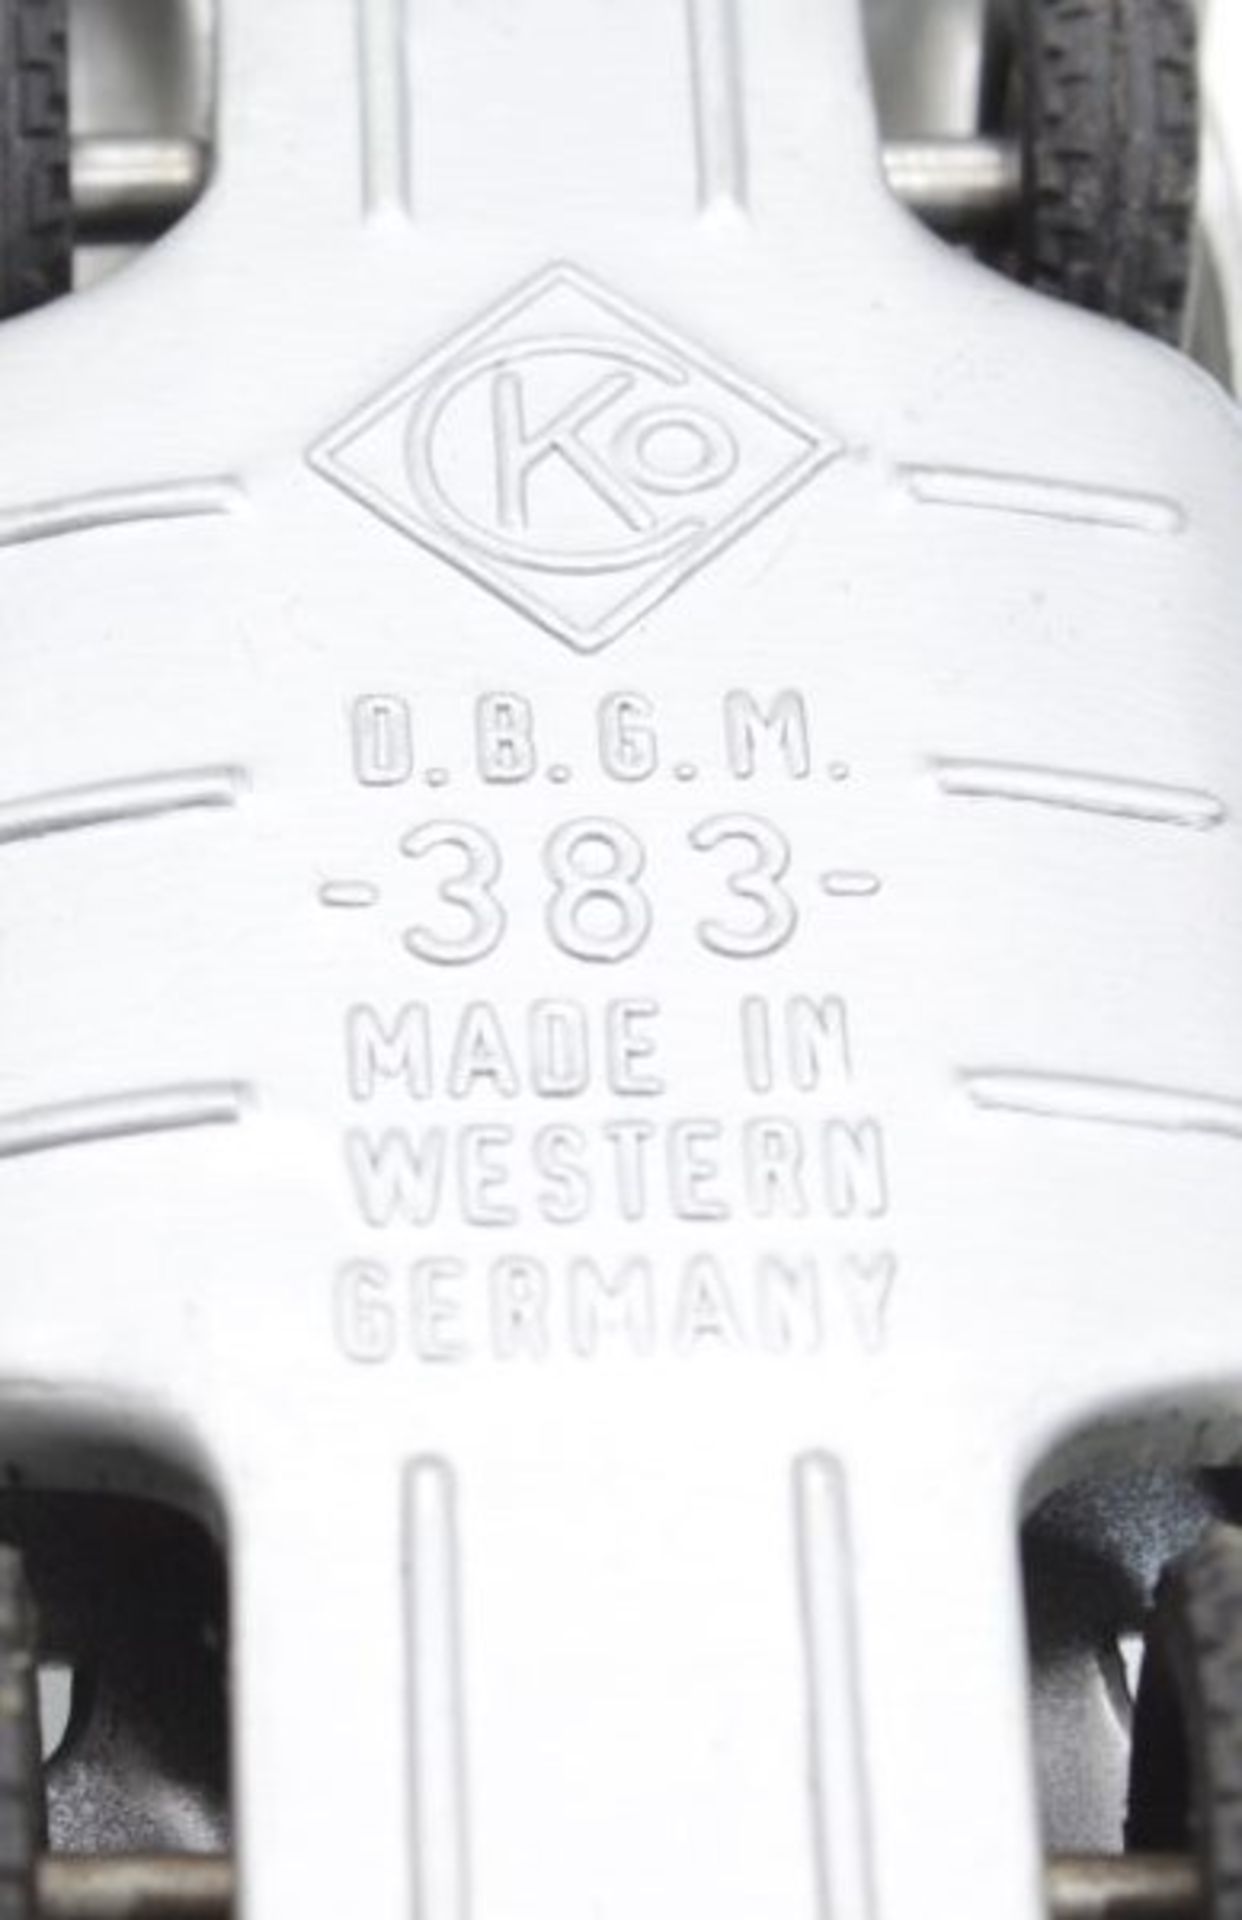 Kellermann, Rennwagen, Nr. 383, W.-Germany, Blech, Friktion läuft, orig, Karton, guter Zustand. - Bild 2 aus 2